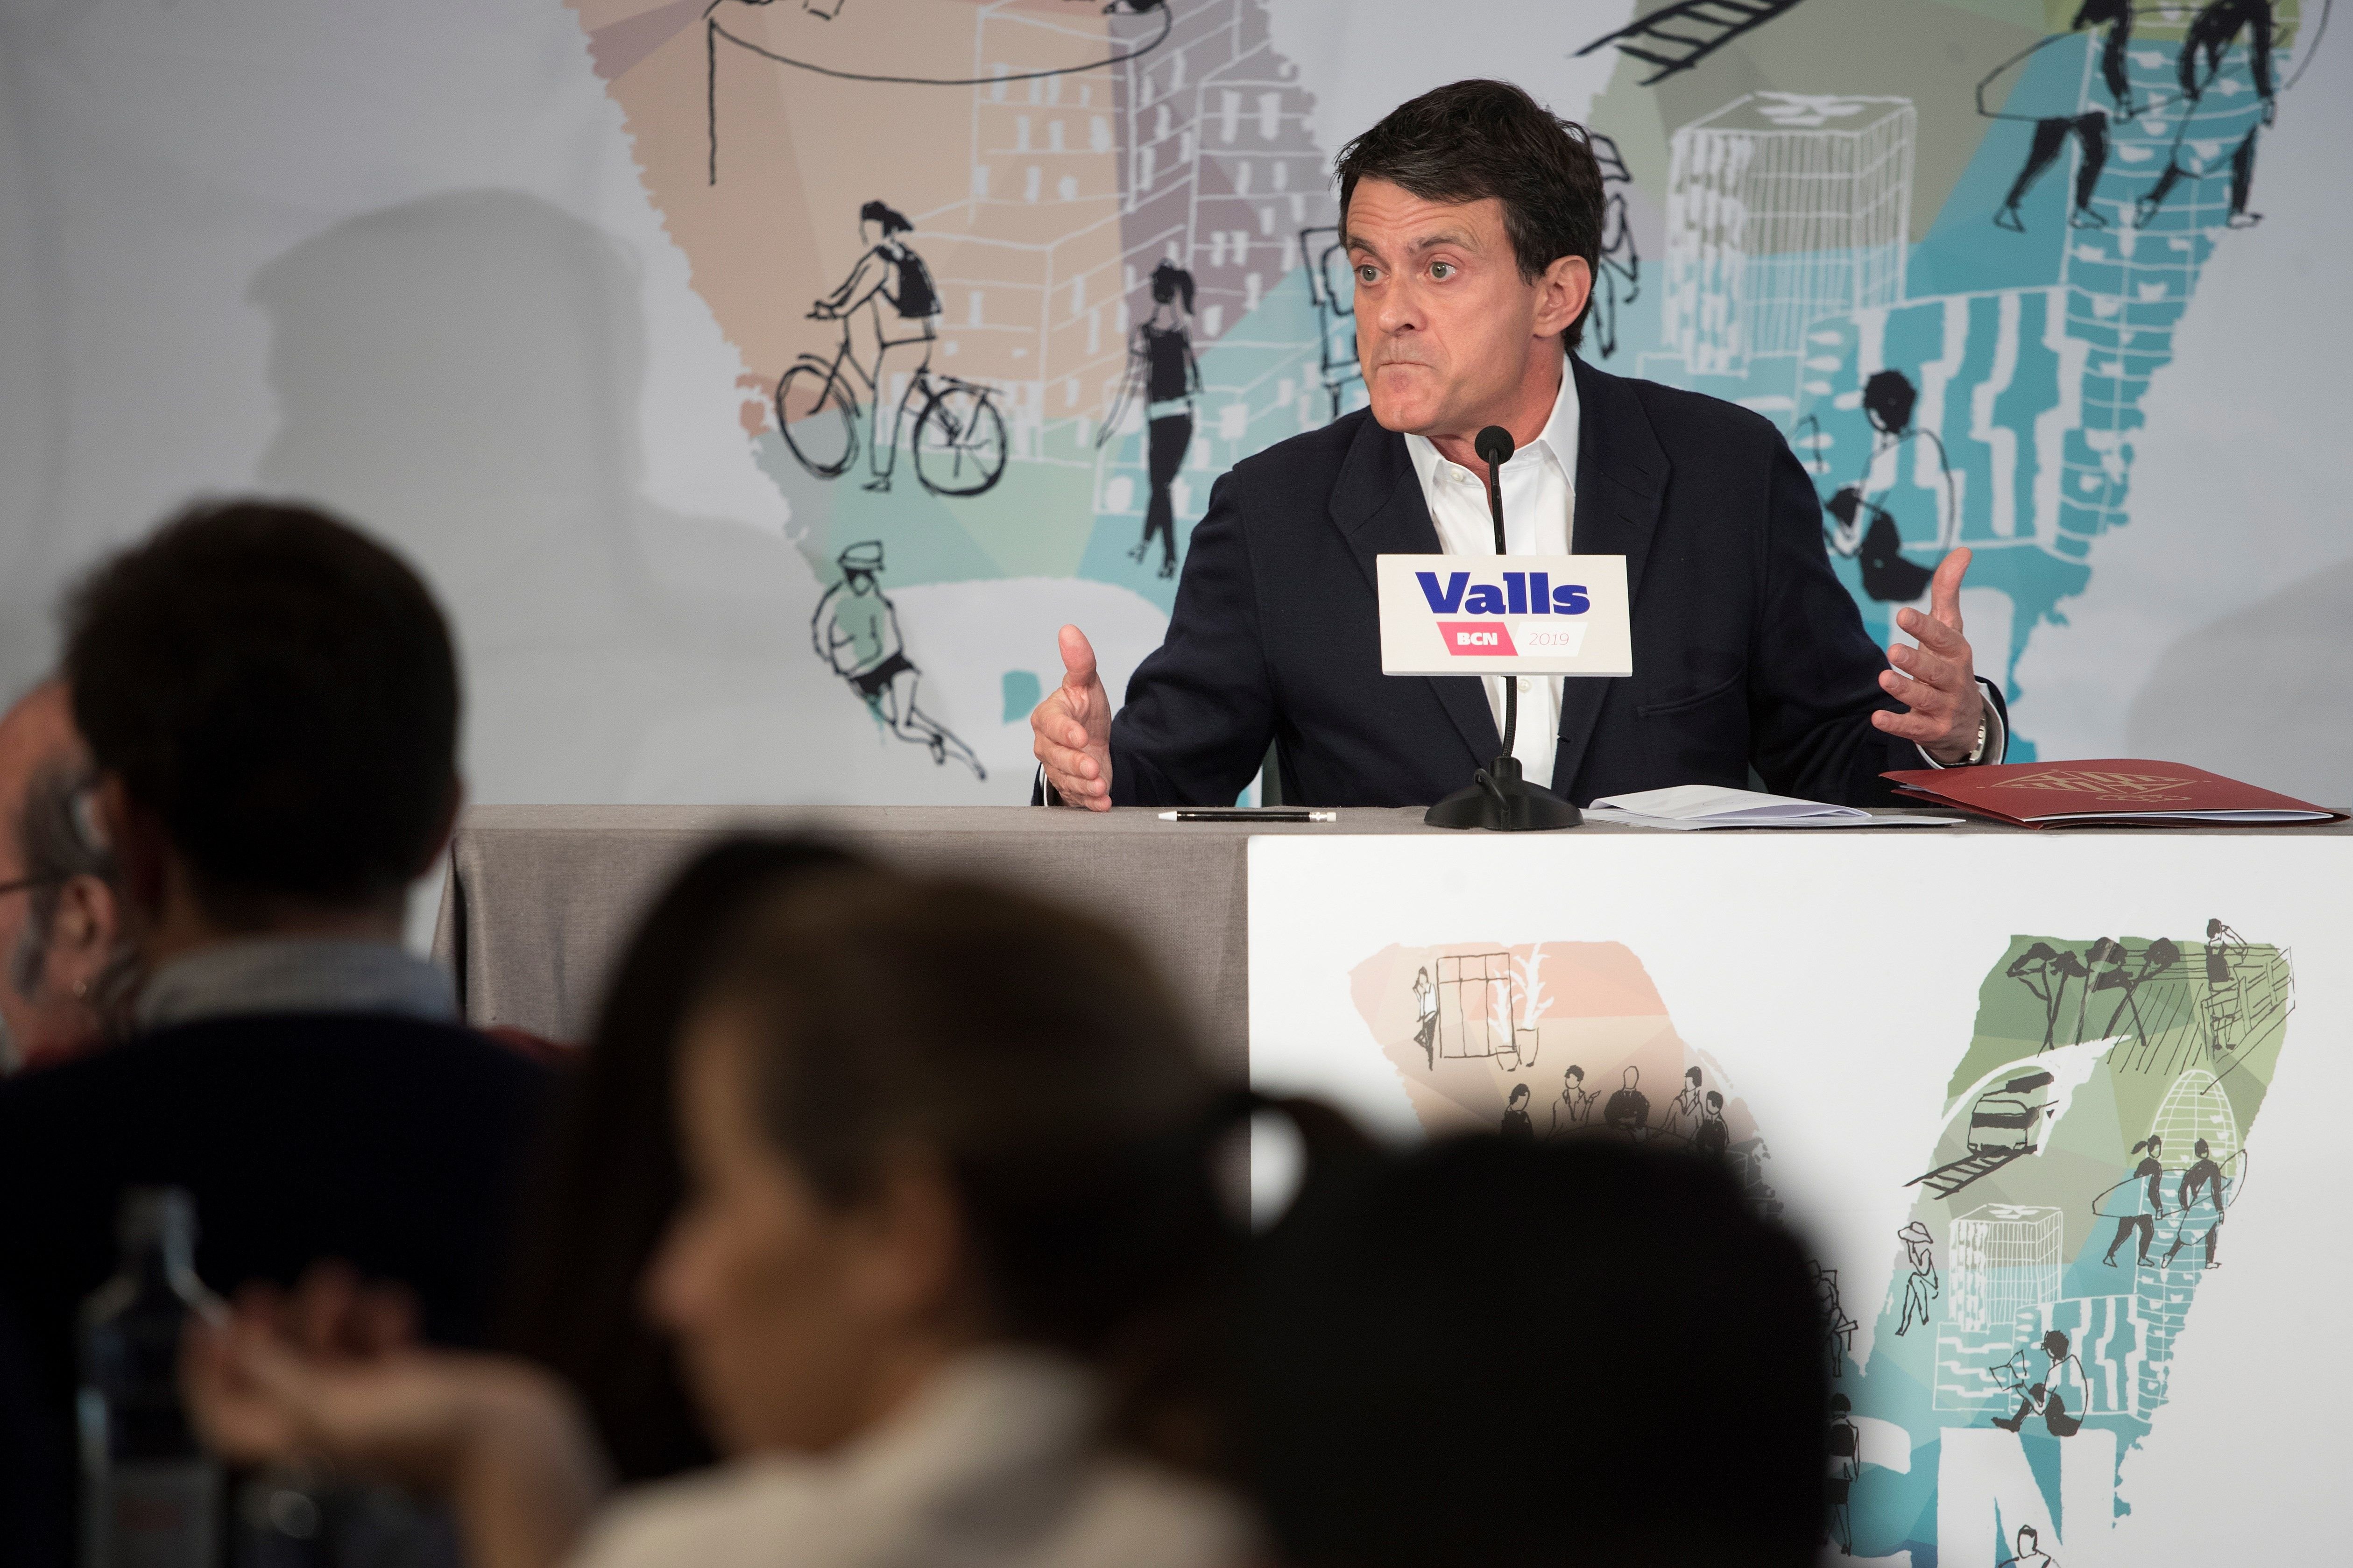 "Blancos, whites, blancos": El vídeo racista de Manuel Valls indigna a la redes